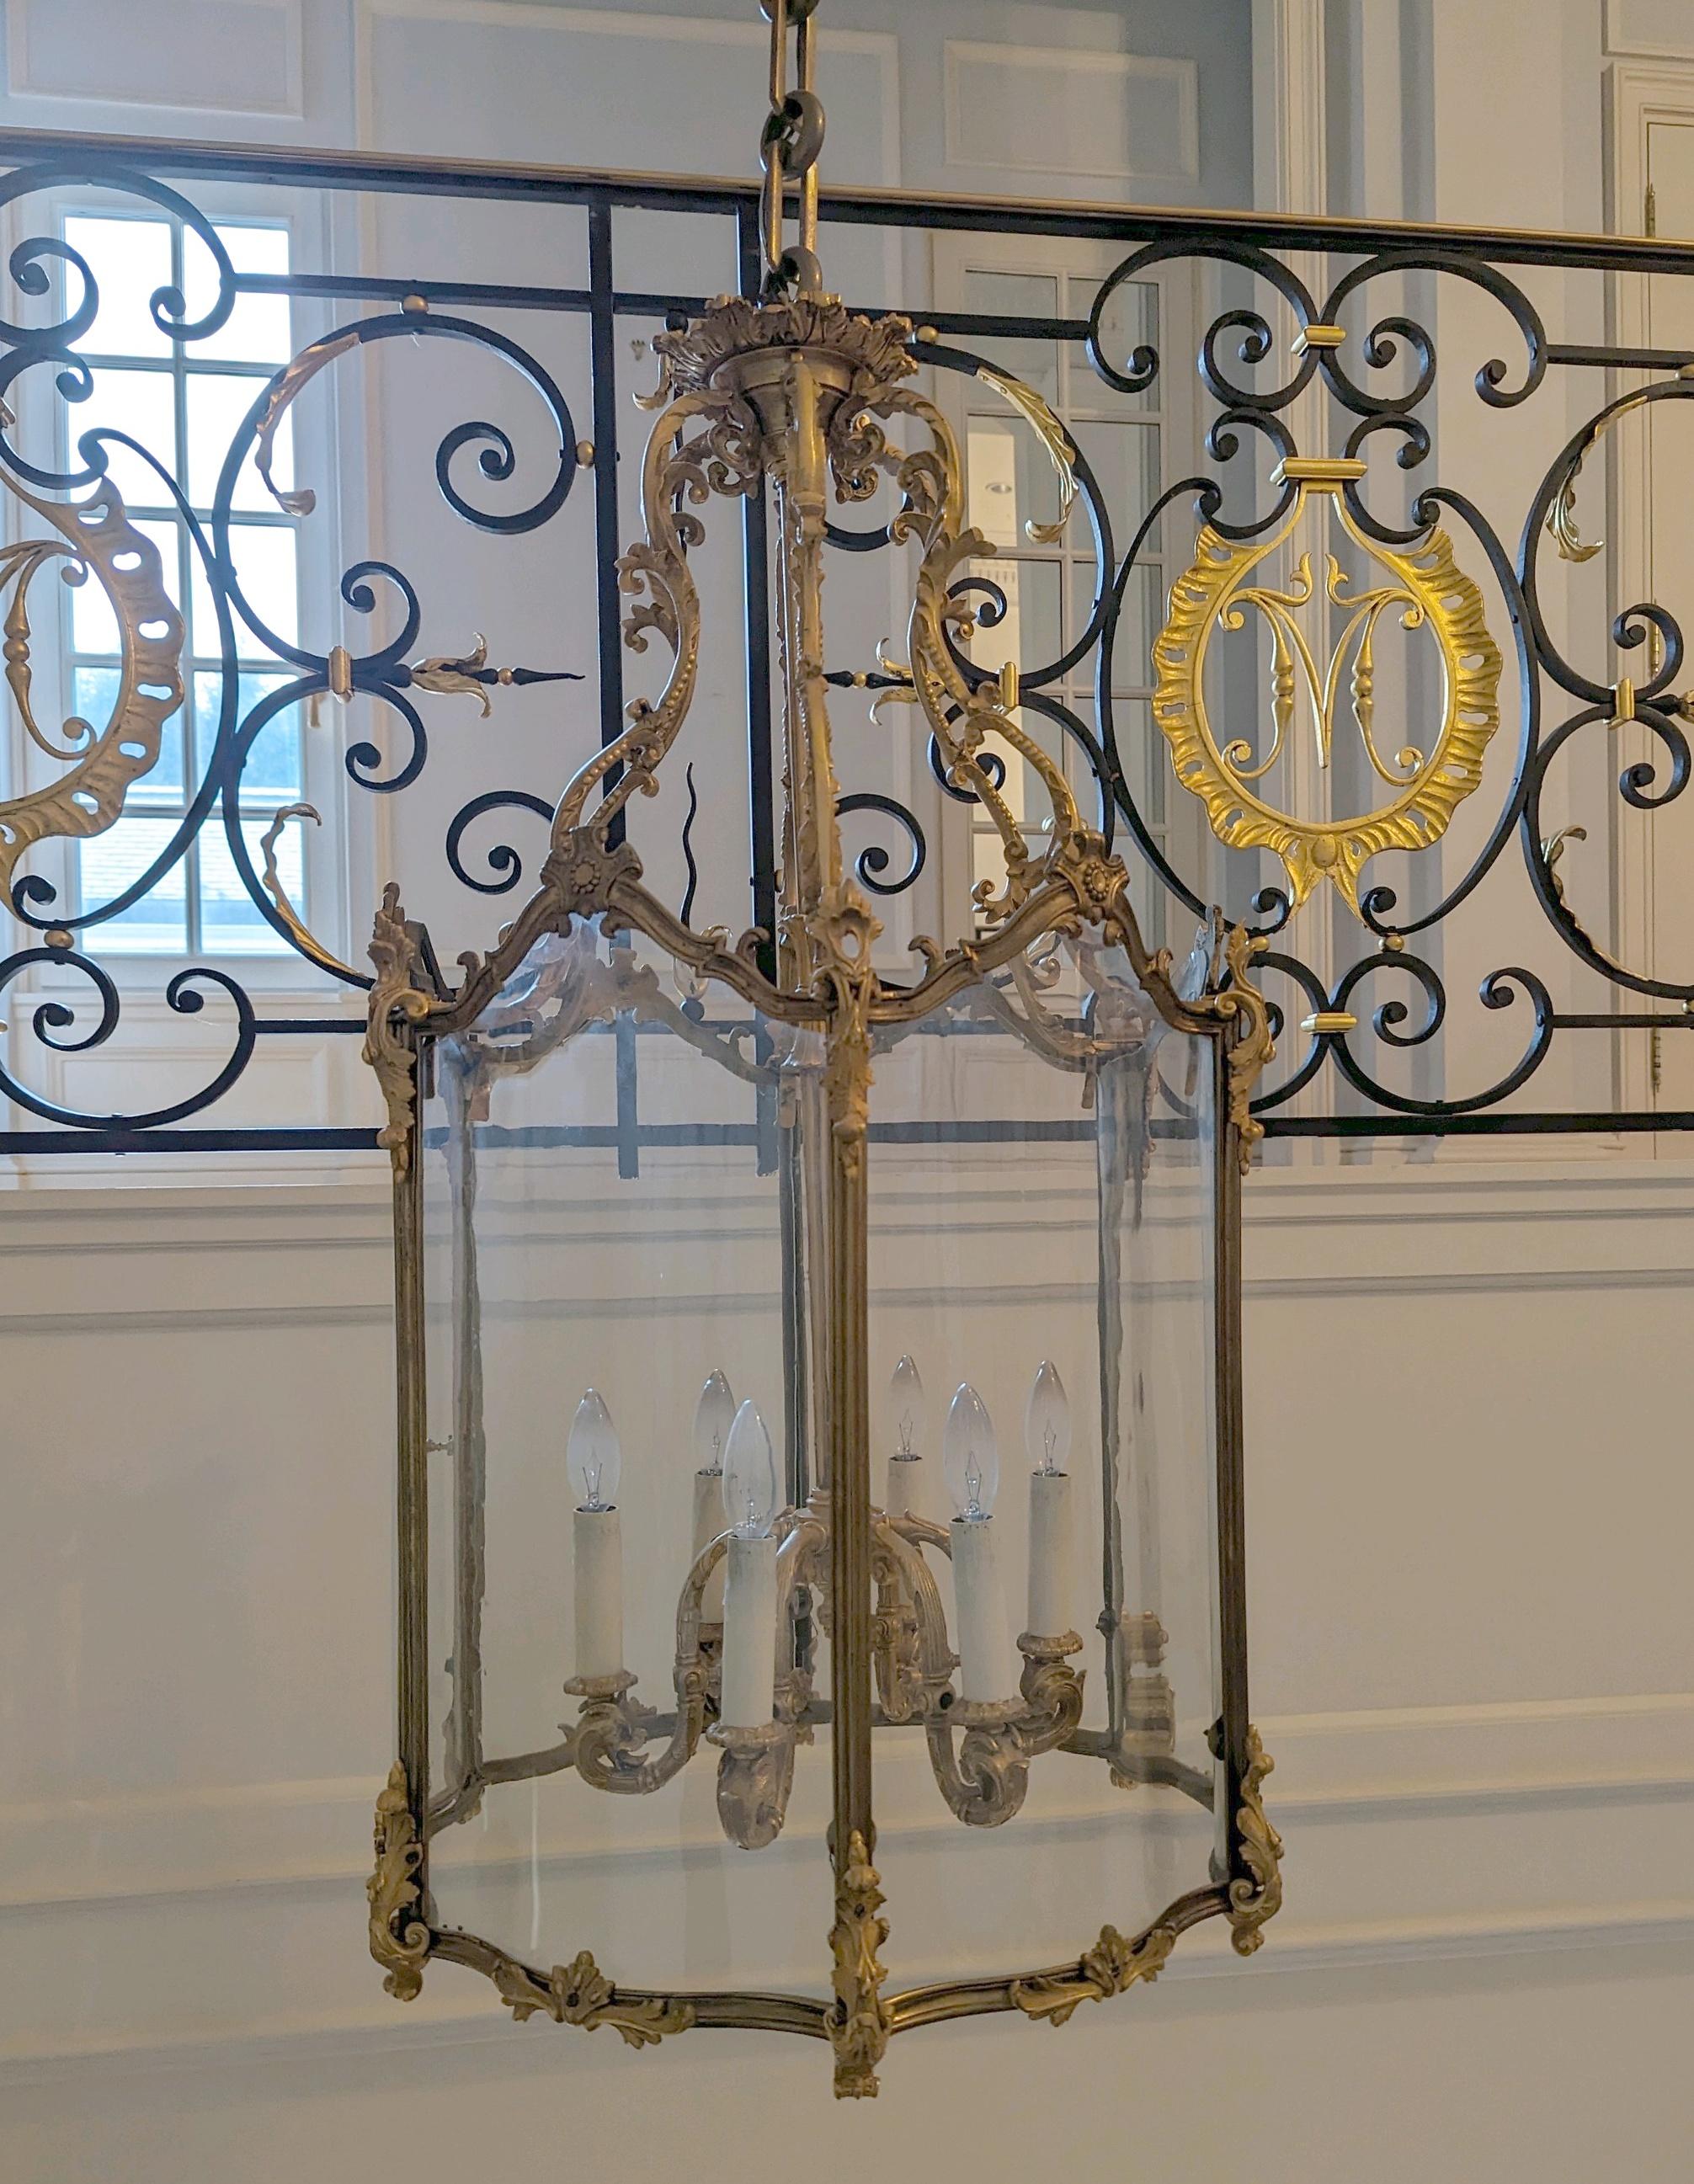 Lanterne suspendue ornée en bronze doré avec six bras de lumière et des panneaux en verre clair incurvé. Elle a été récupérée dans une propriété située à Greenwich, dans le Connecticut. Bon état avec une usure appropriée due à l'âge. Un disponible.